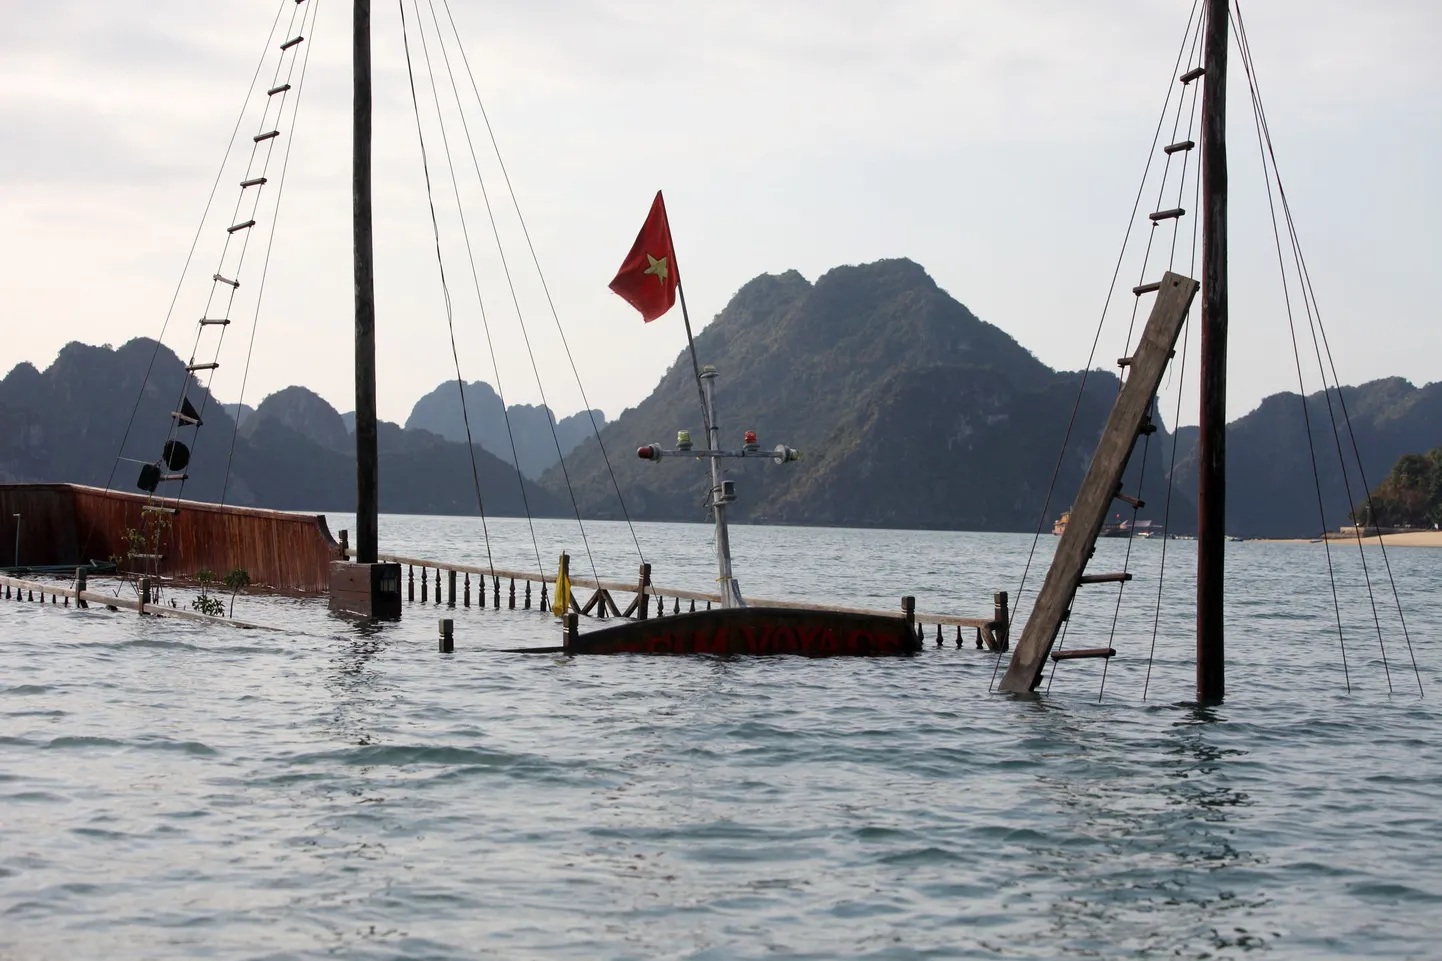 Vietnamis Halongi lahel vajus vee alla turiste sõidutanud laev Bien Mur.